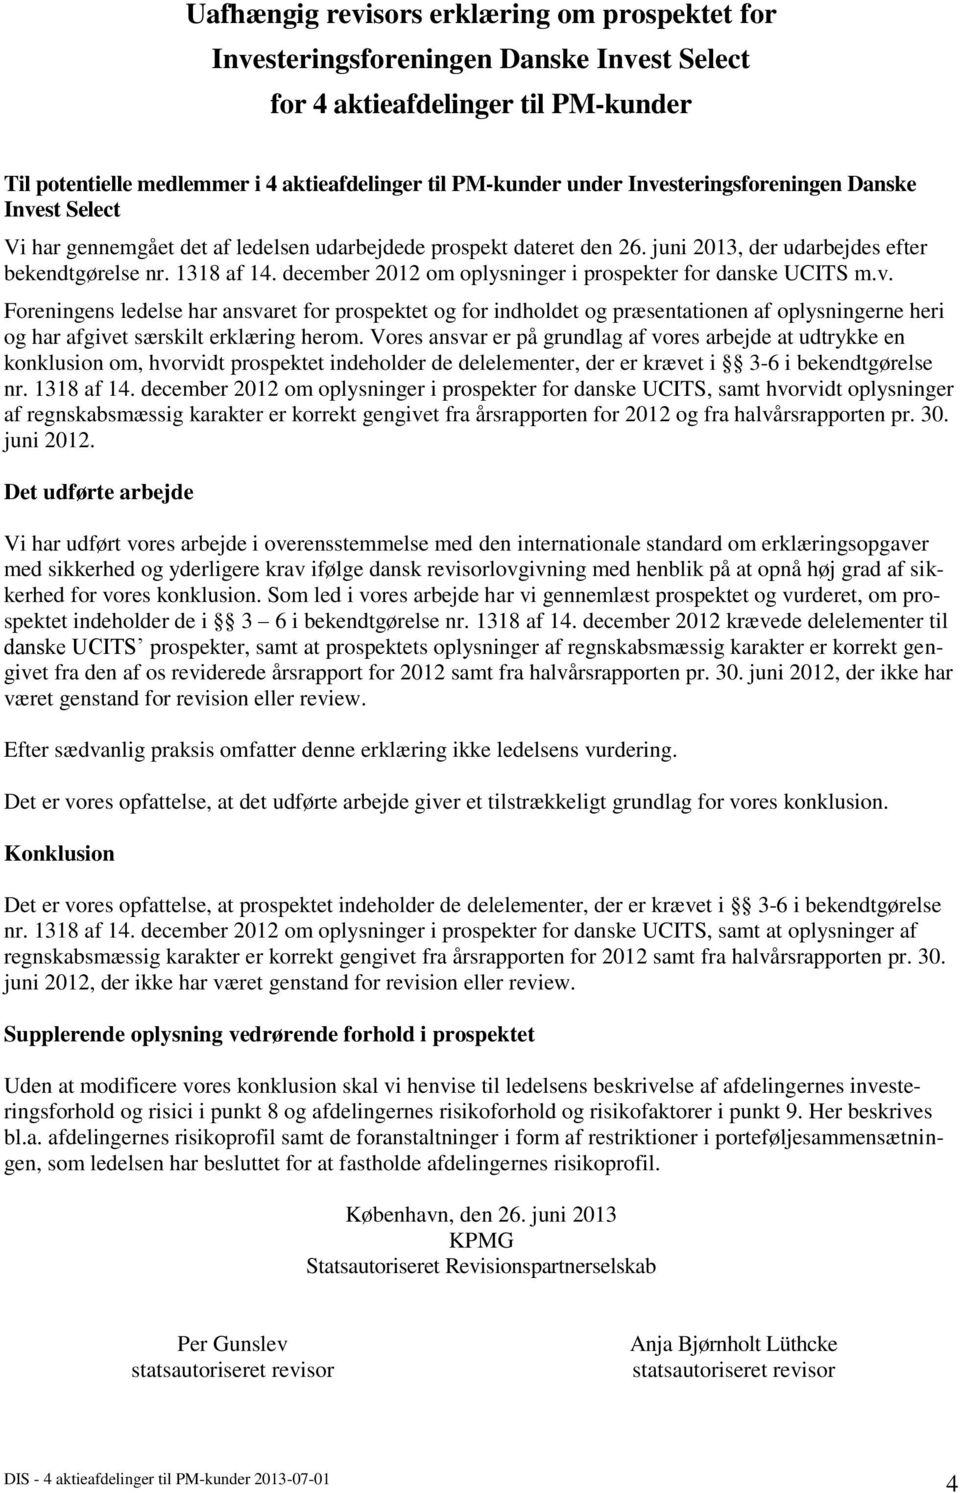 december 2012 om oplysninger i prospekter for danske UCITS m.v.